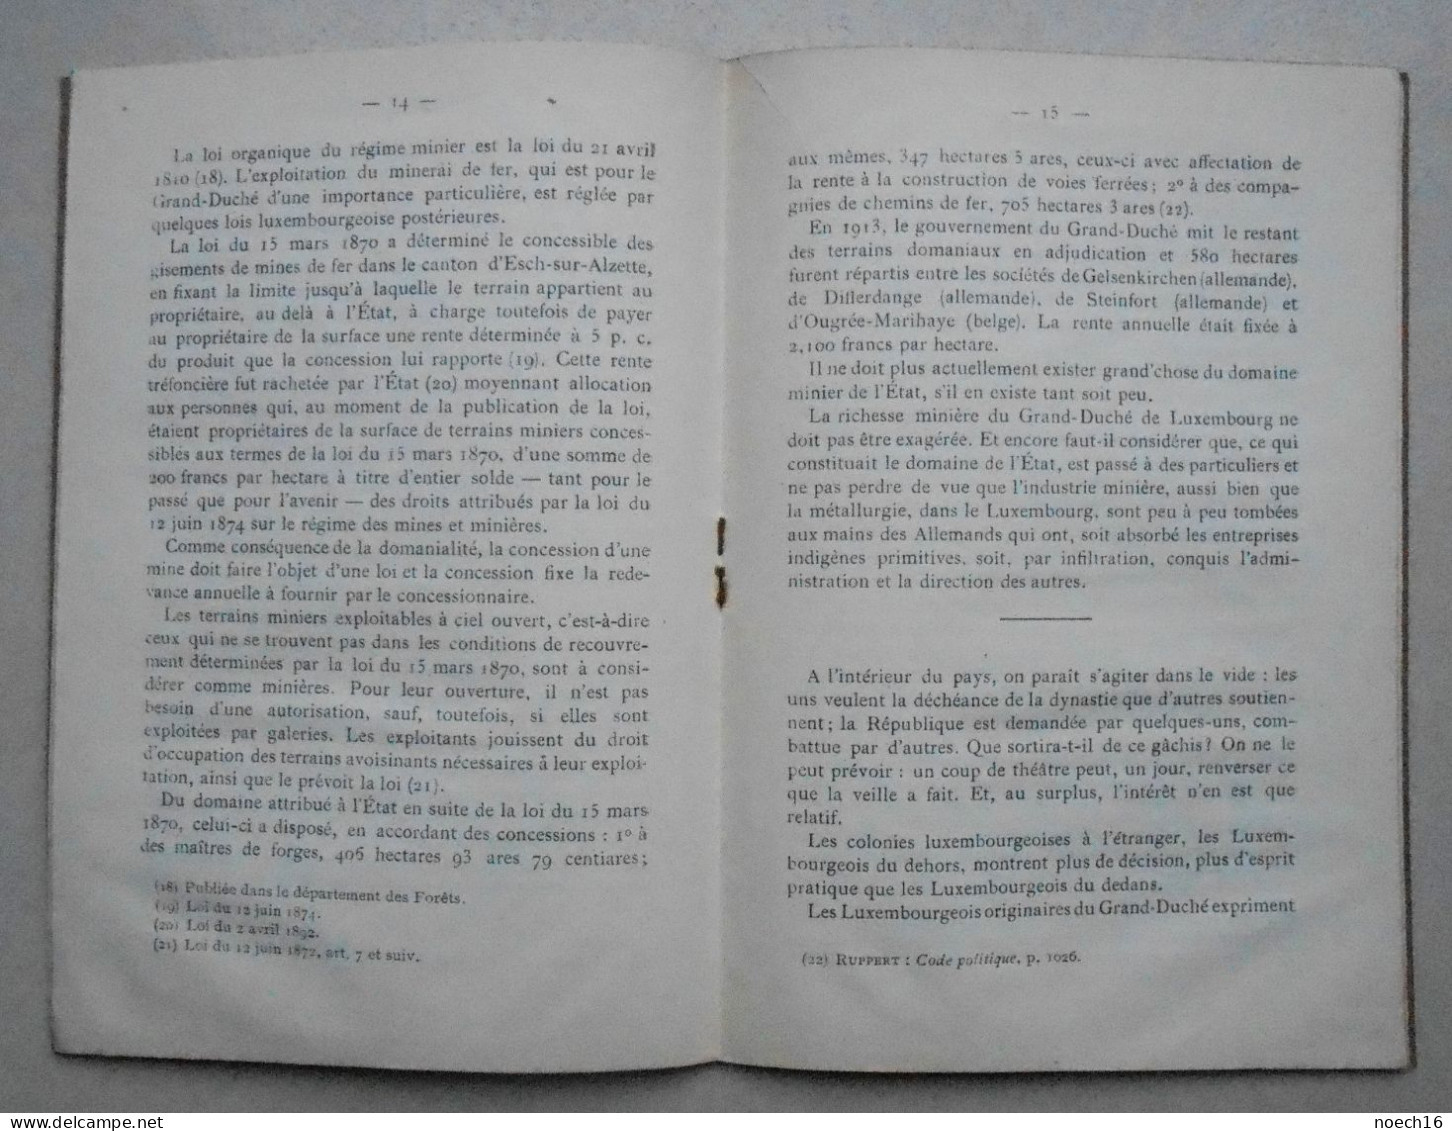 Livret Le (Grand Duché) Luxembourg Tout Entier à La Belgique / Réparation D'une Iniquité 1839-1919 - Historical Documents